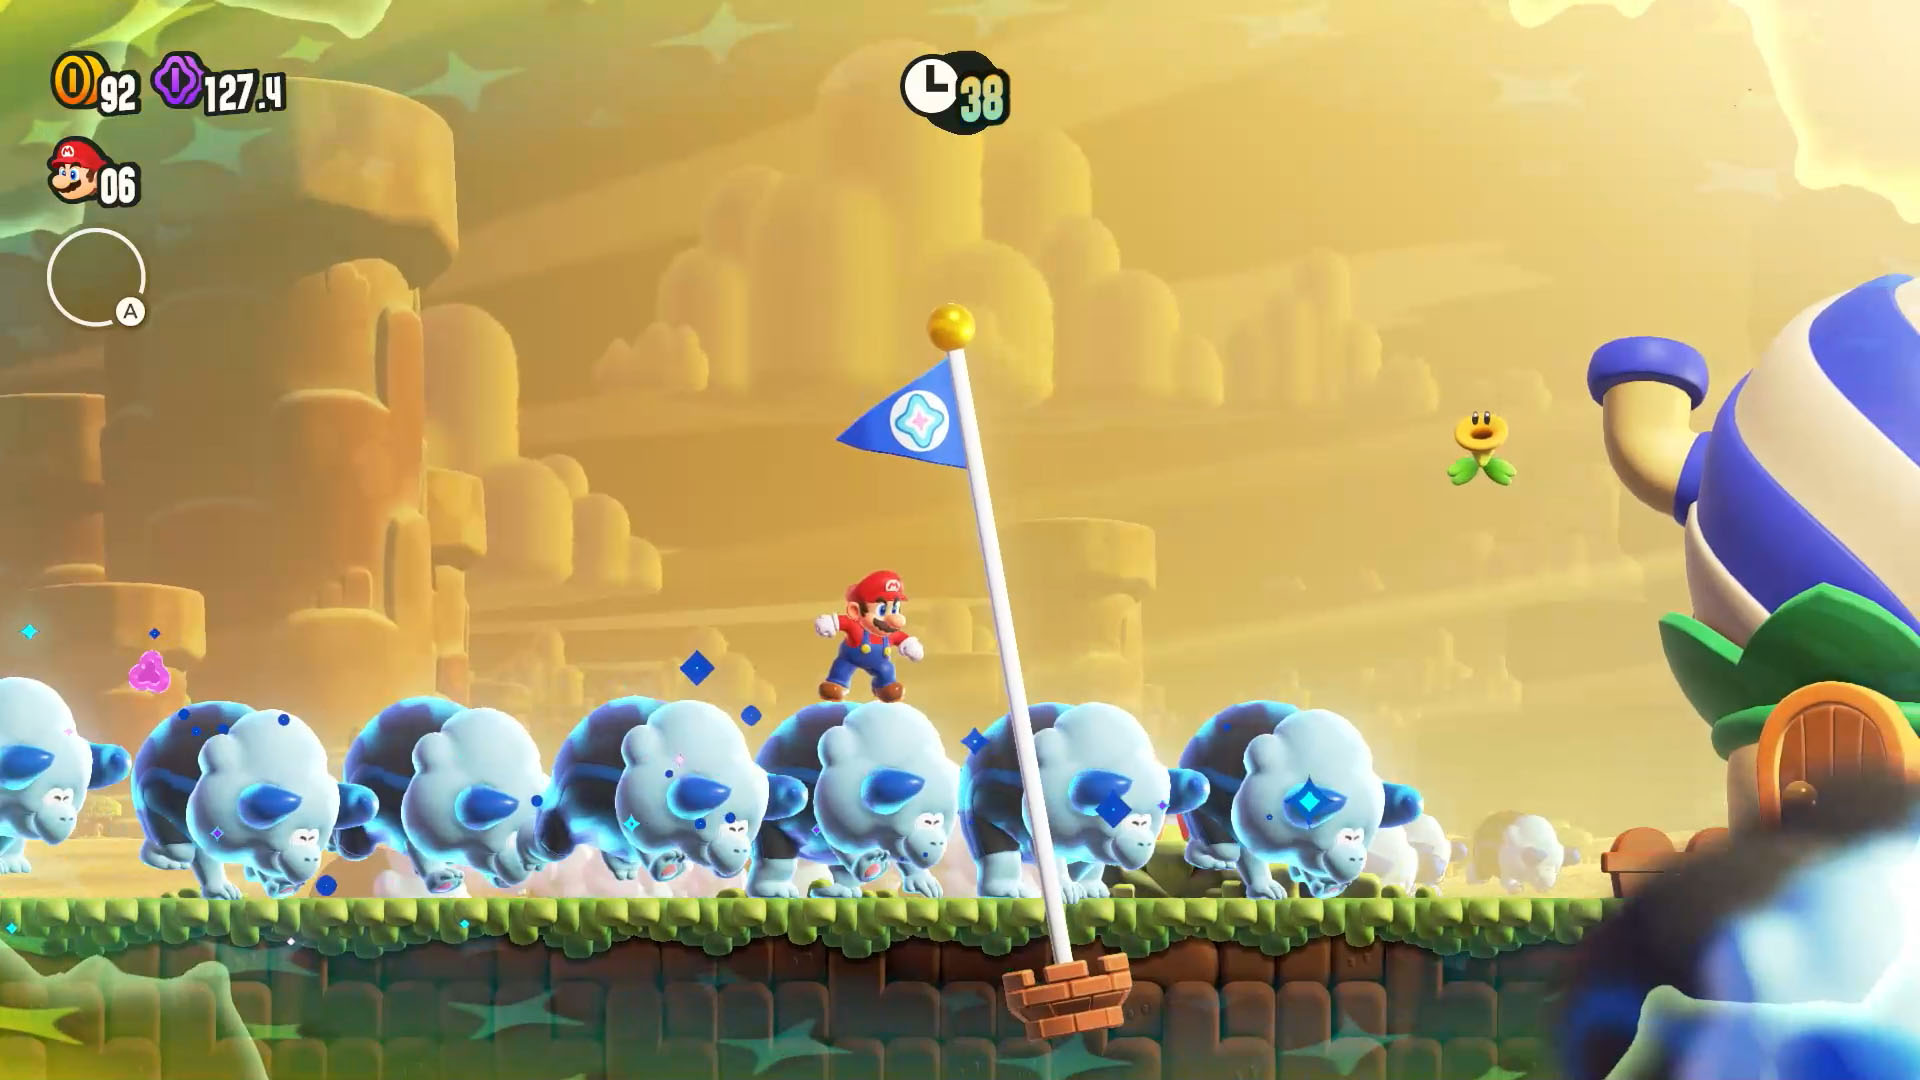 If super Mario bros wonder was on Wii : r/wii